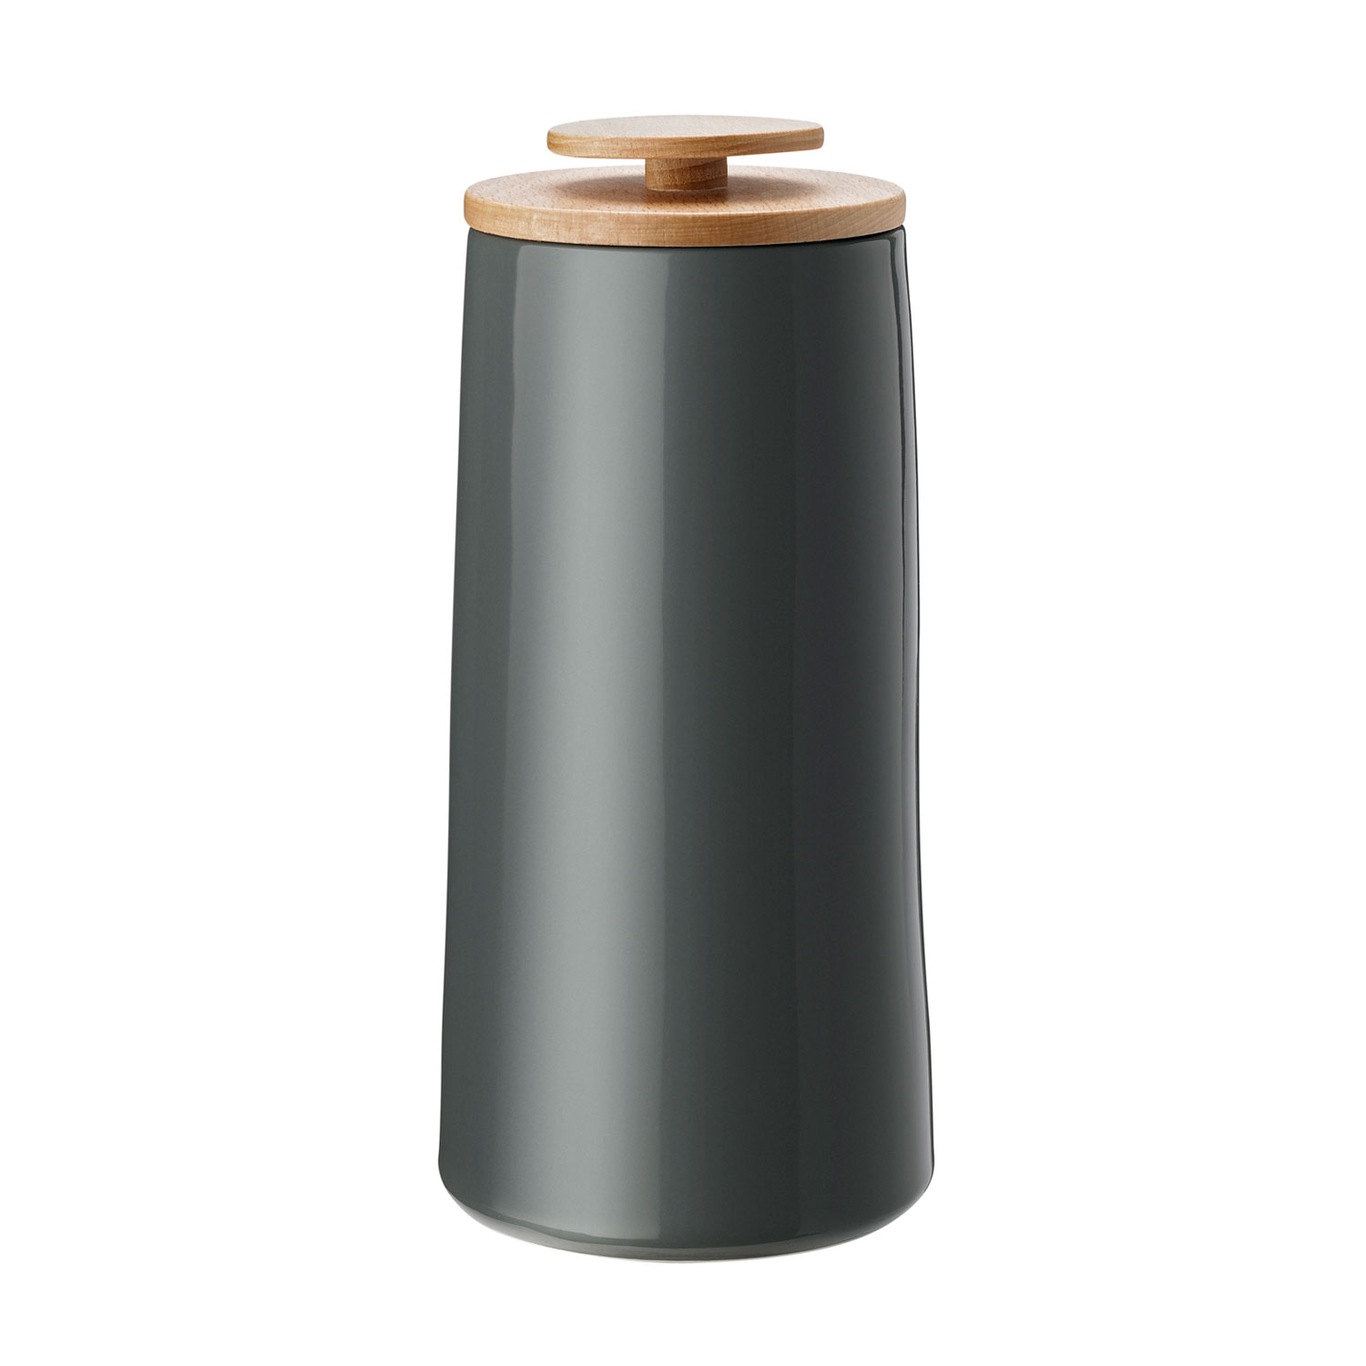 Emma Coffee Jar/Storage Jar 500 g, Dark Grey